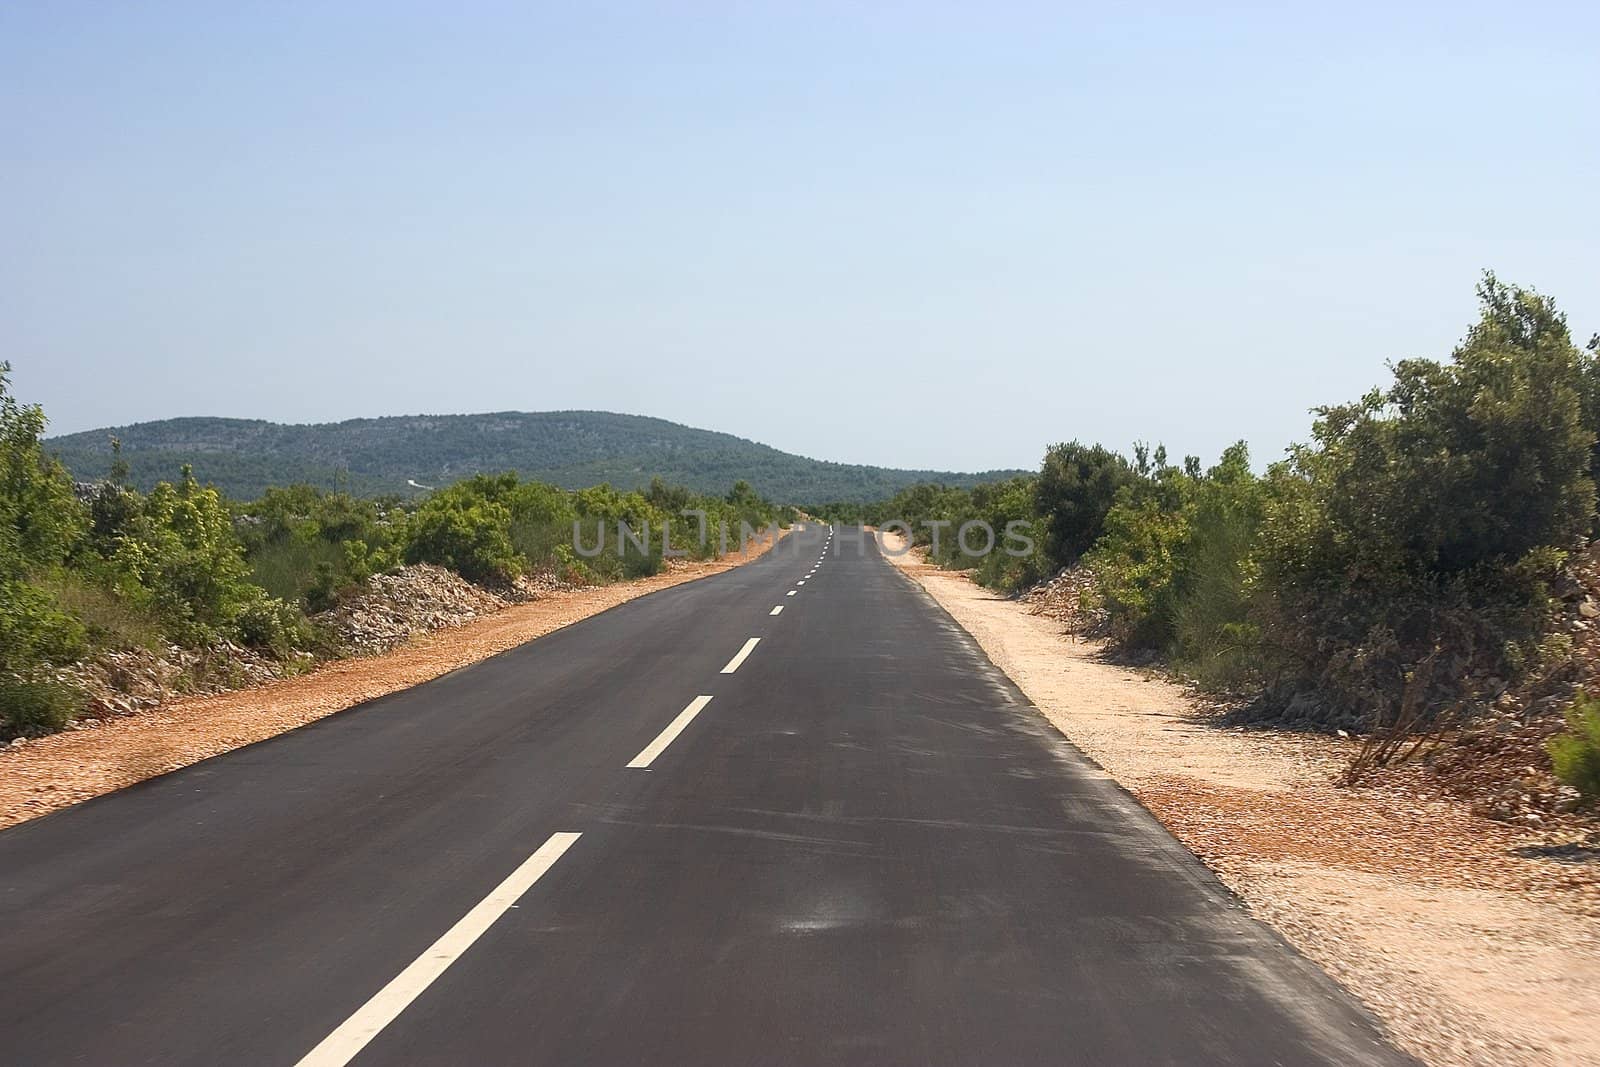 Road by miradrozdowski